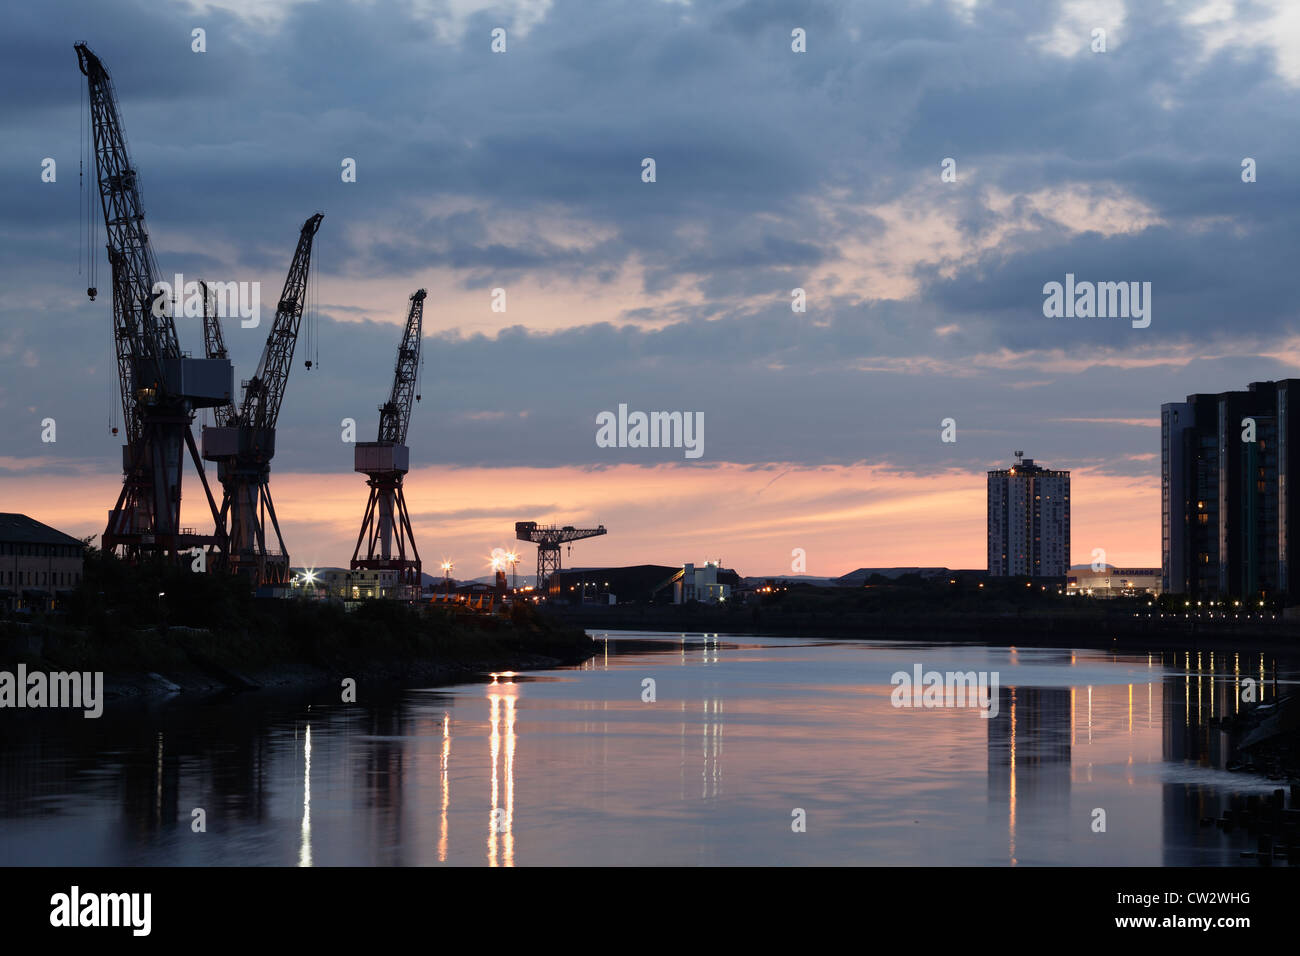 Sonnenuntergang über die Krane bei BAE Systems Werft neben dem Fluss Clyde in Govan, Glasgow, Schottland, Großbritannien Stockfoto